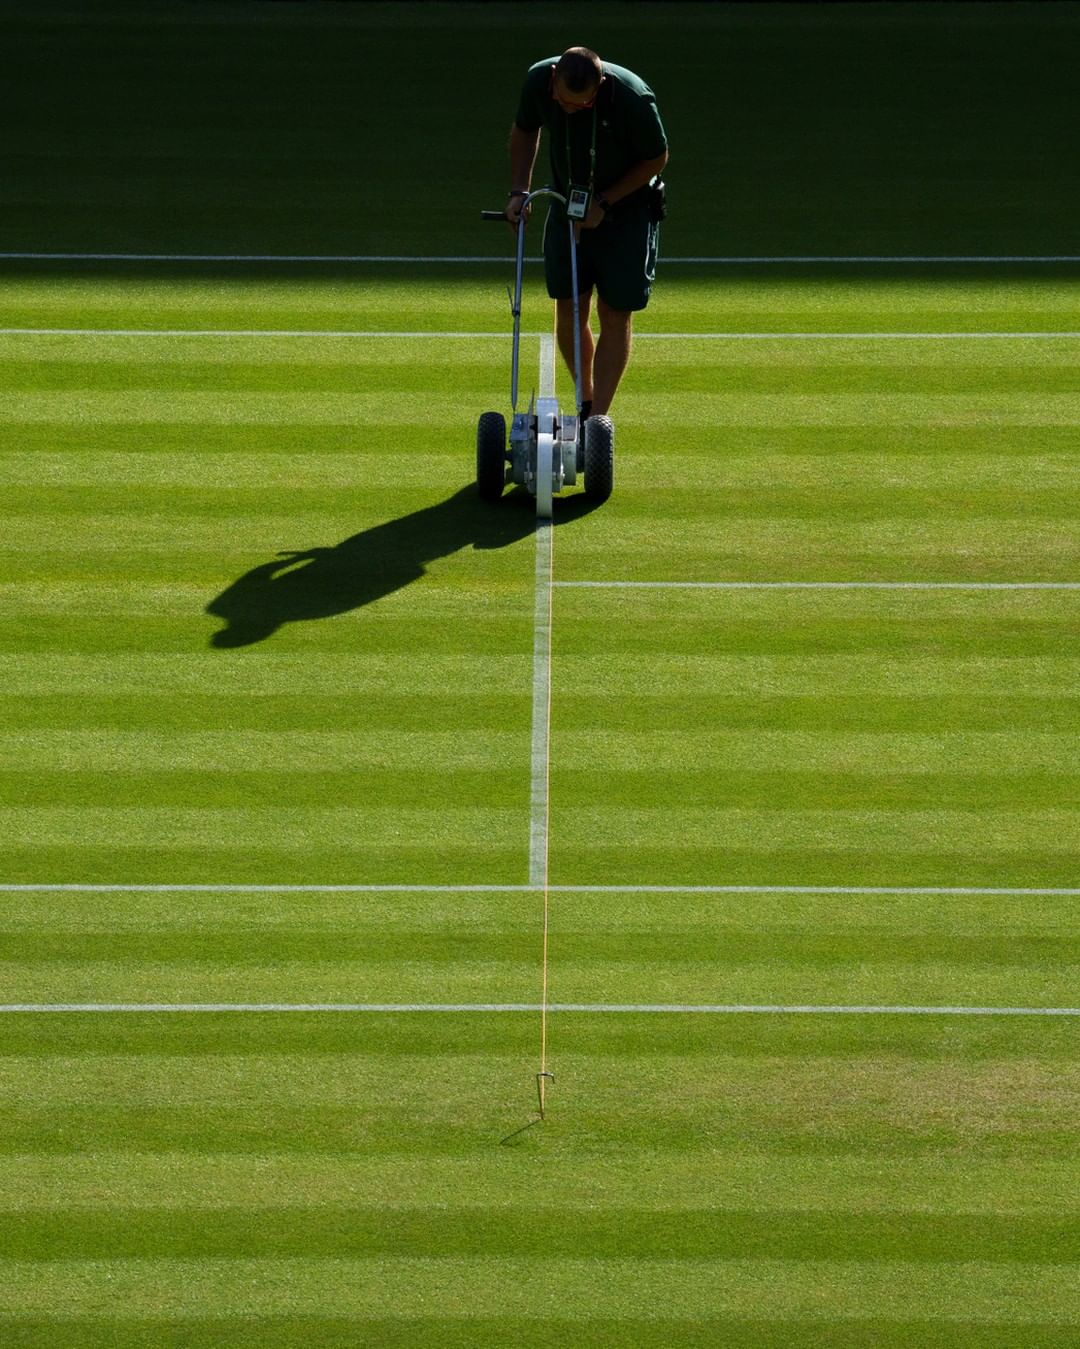 Wimbledon Facts: Grass is cut to 8mm